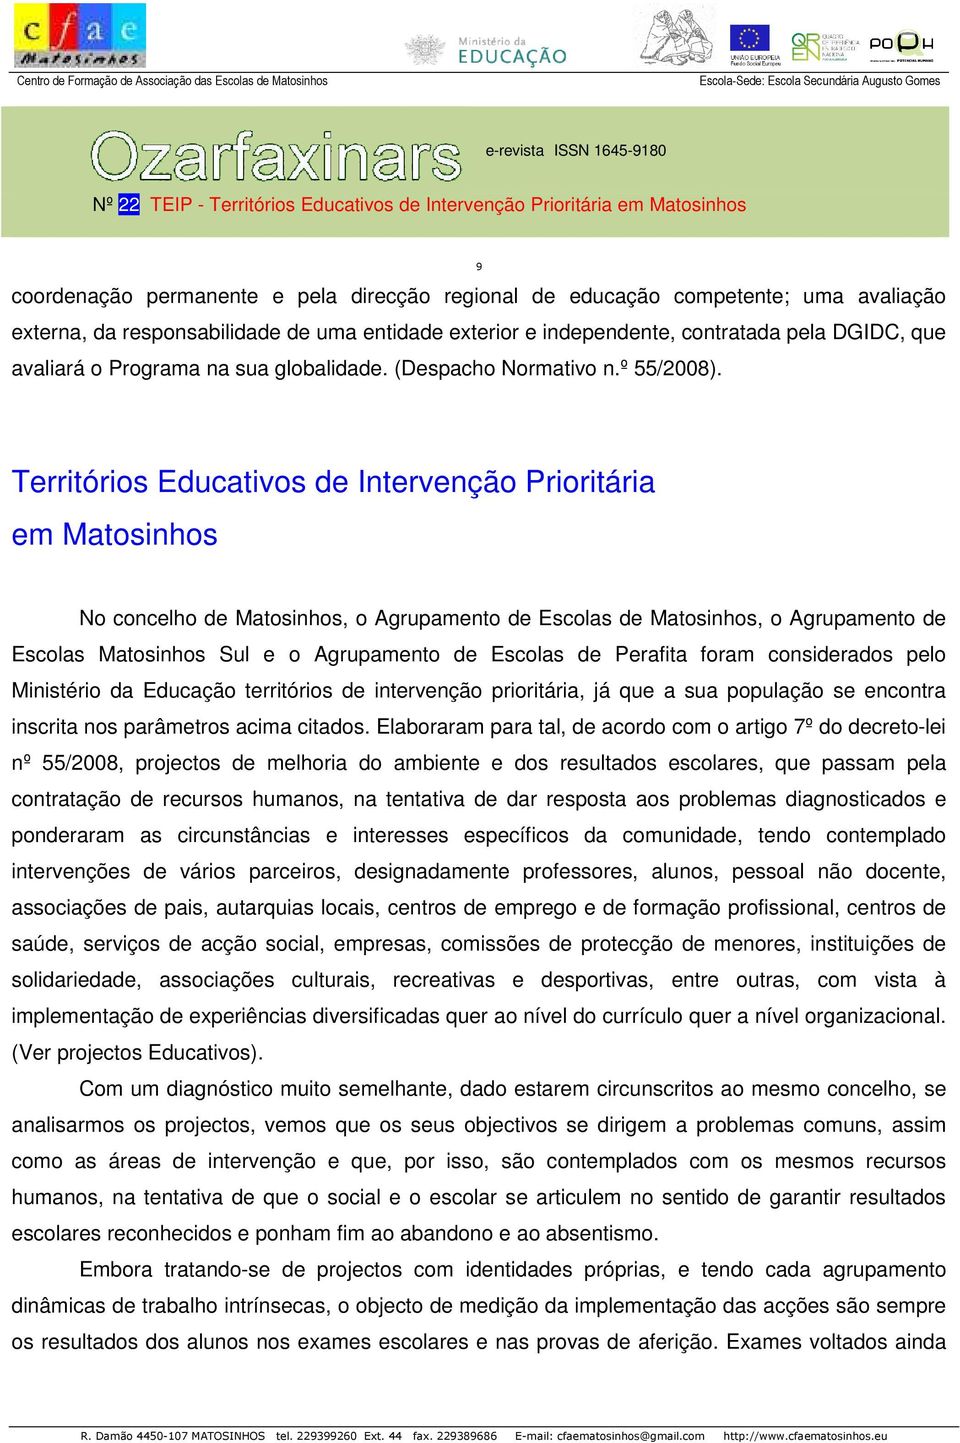 Territórios Educativos de Intervenção Prioritária em Matosinhos No concelho de Matosinhos, o Agrupamento de Escolas de Matosinhos, o Agrupamento de Escolas Matosinhos Sul e o Agrupamento de Escolas